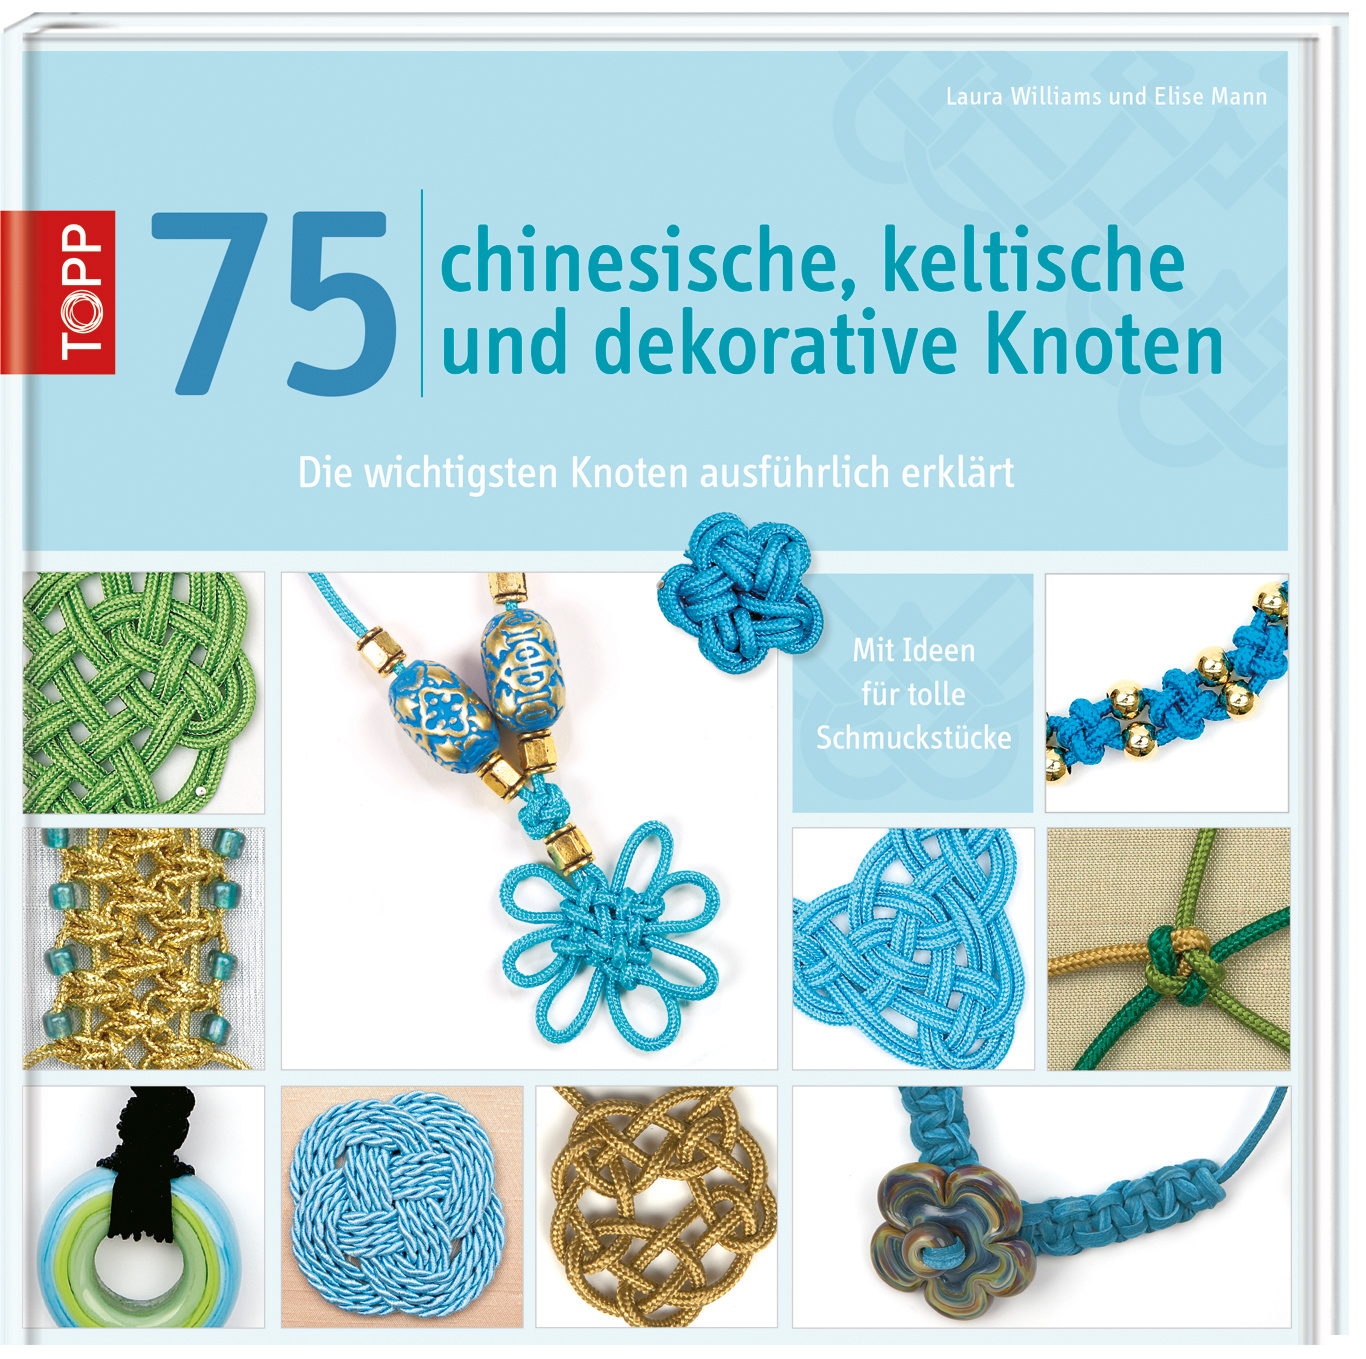 75 chinesische, keltische und dekorative Knoten